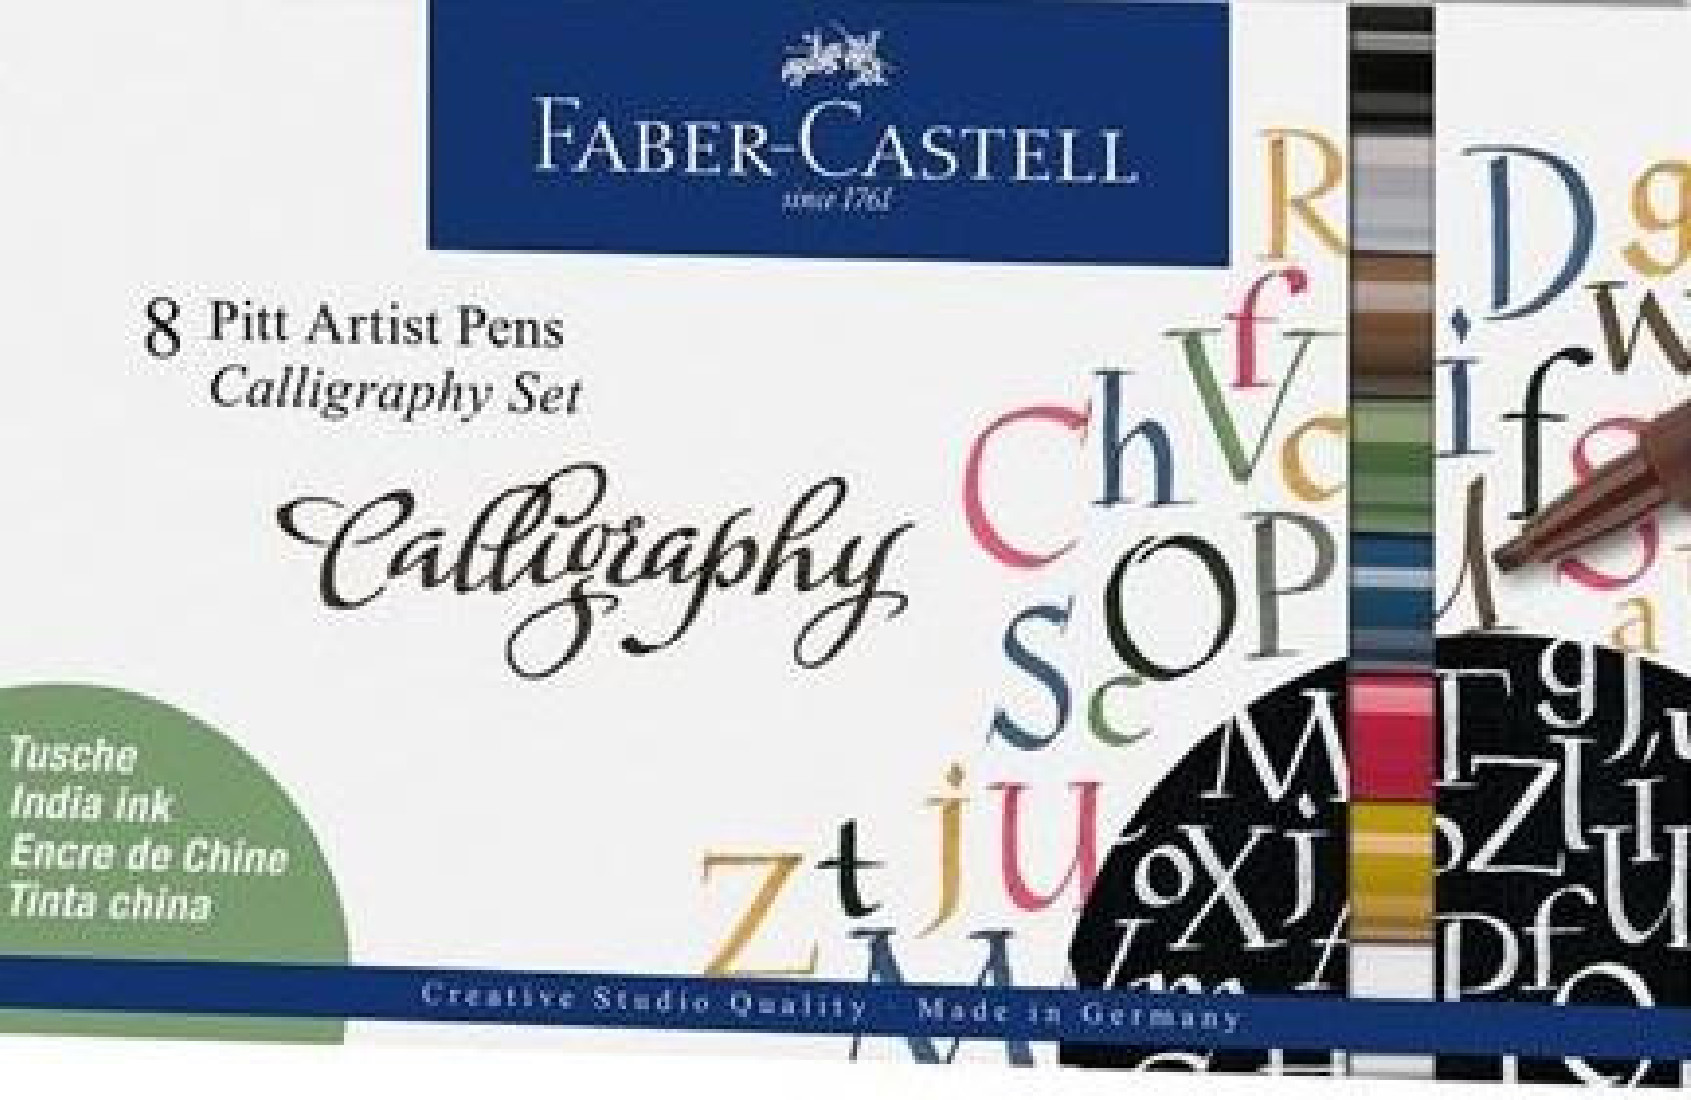 Faber-Castell 8 Pitt Artist Pens Calligraphy Set 16 75 08